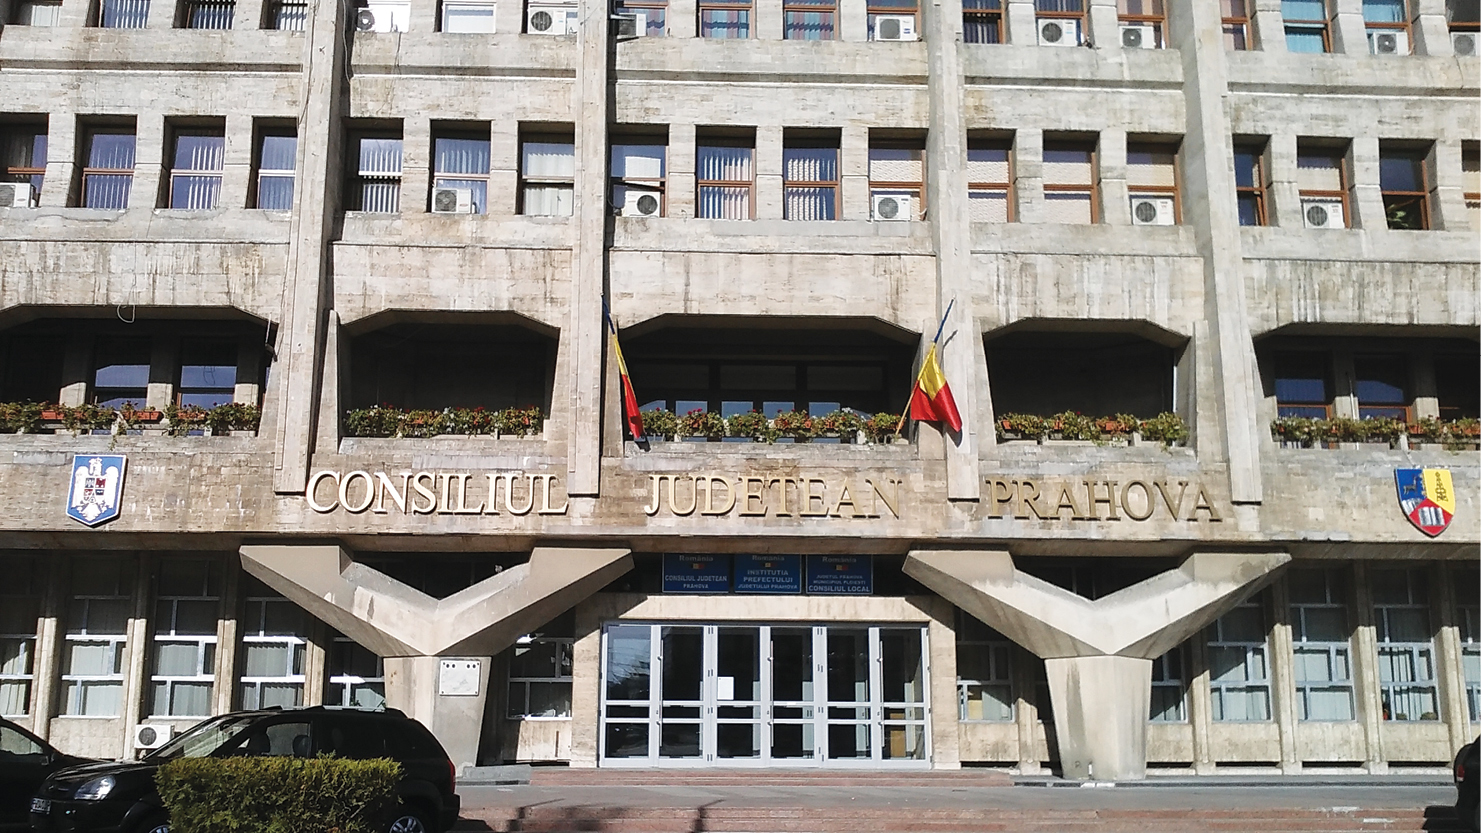 Ședința de învestire a noilor consilieri județeni, programată vineri, la Palatul Administrativ din Ploiești